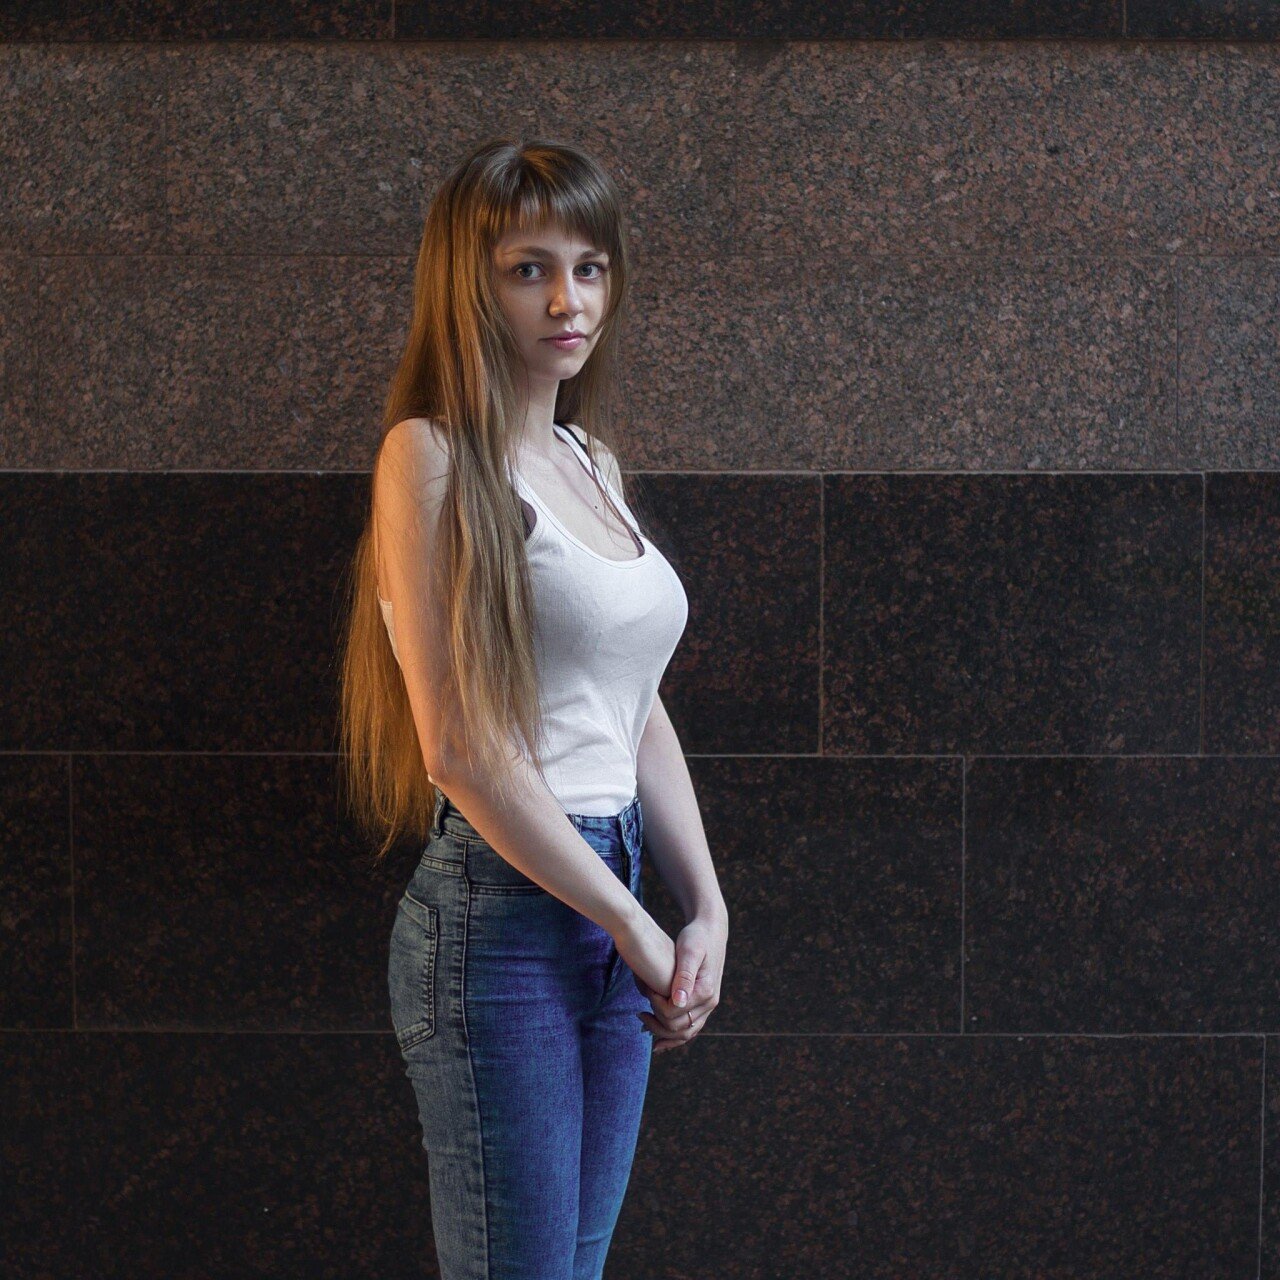 ㅇㅎ) 여성의 아름다움을 찍는 28세 러시아 사진작가